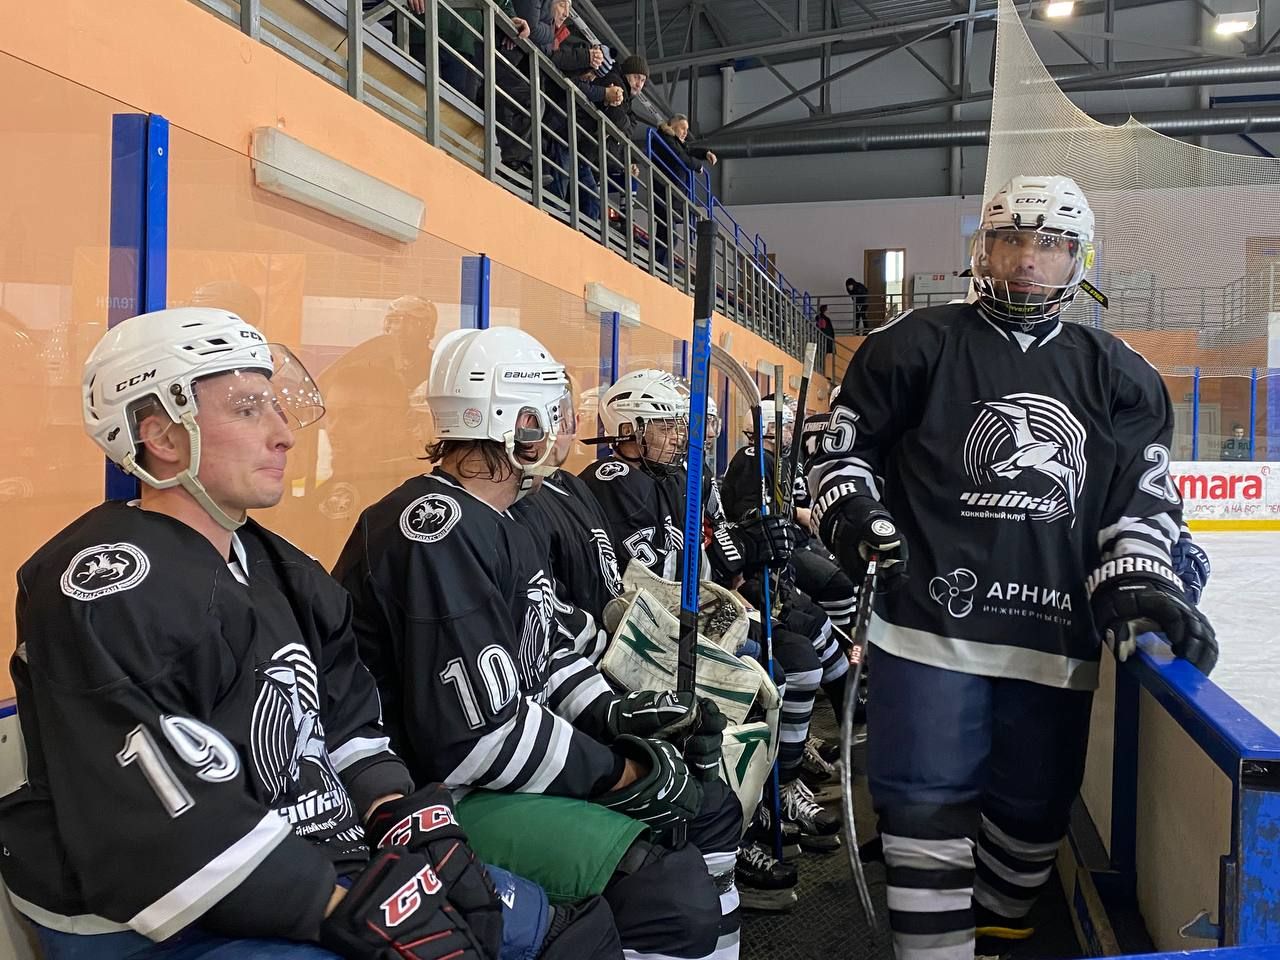 В Кукморе проходит юбилейный турнир по хоккею с шайбой на «Кубок звезд»